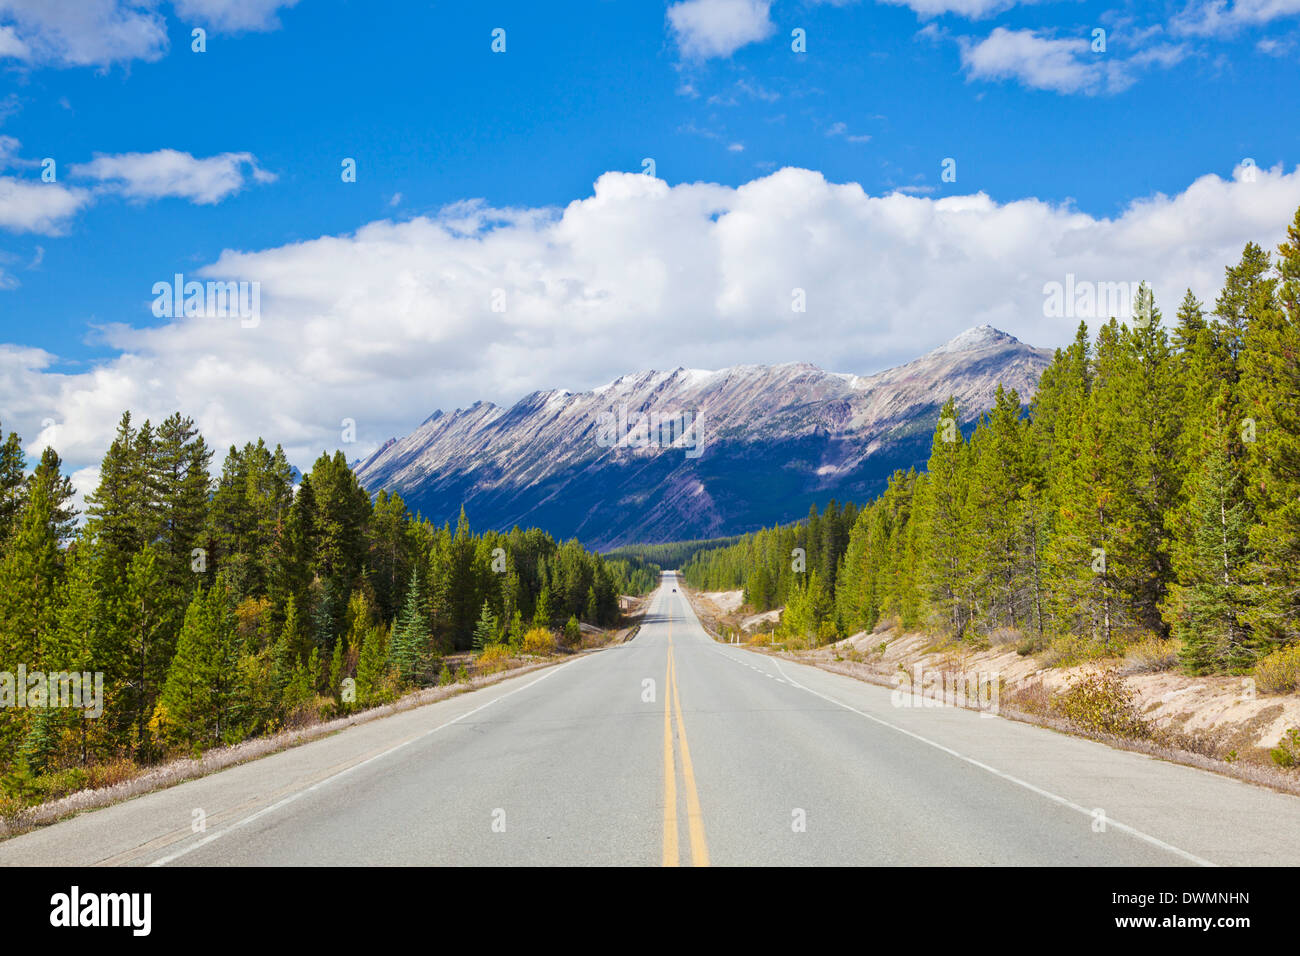 La route de la promenade des Glaciers dans le parc national Jasper, le site du patrimoine mondial de l'UNESCO, de l'Alberta, Canadian Rockies, Canada Banque D'Images